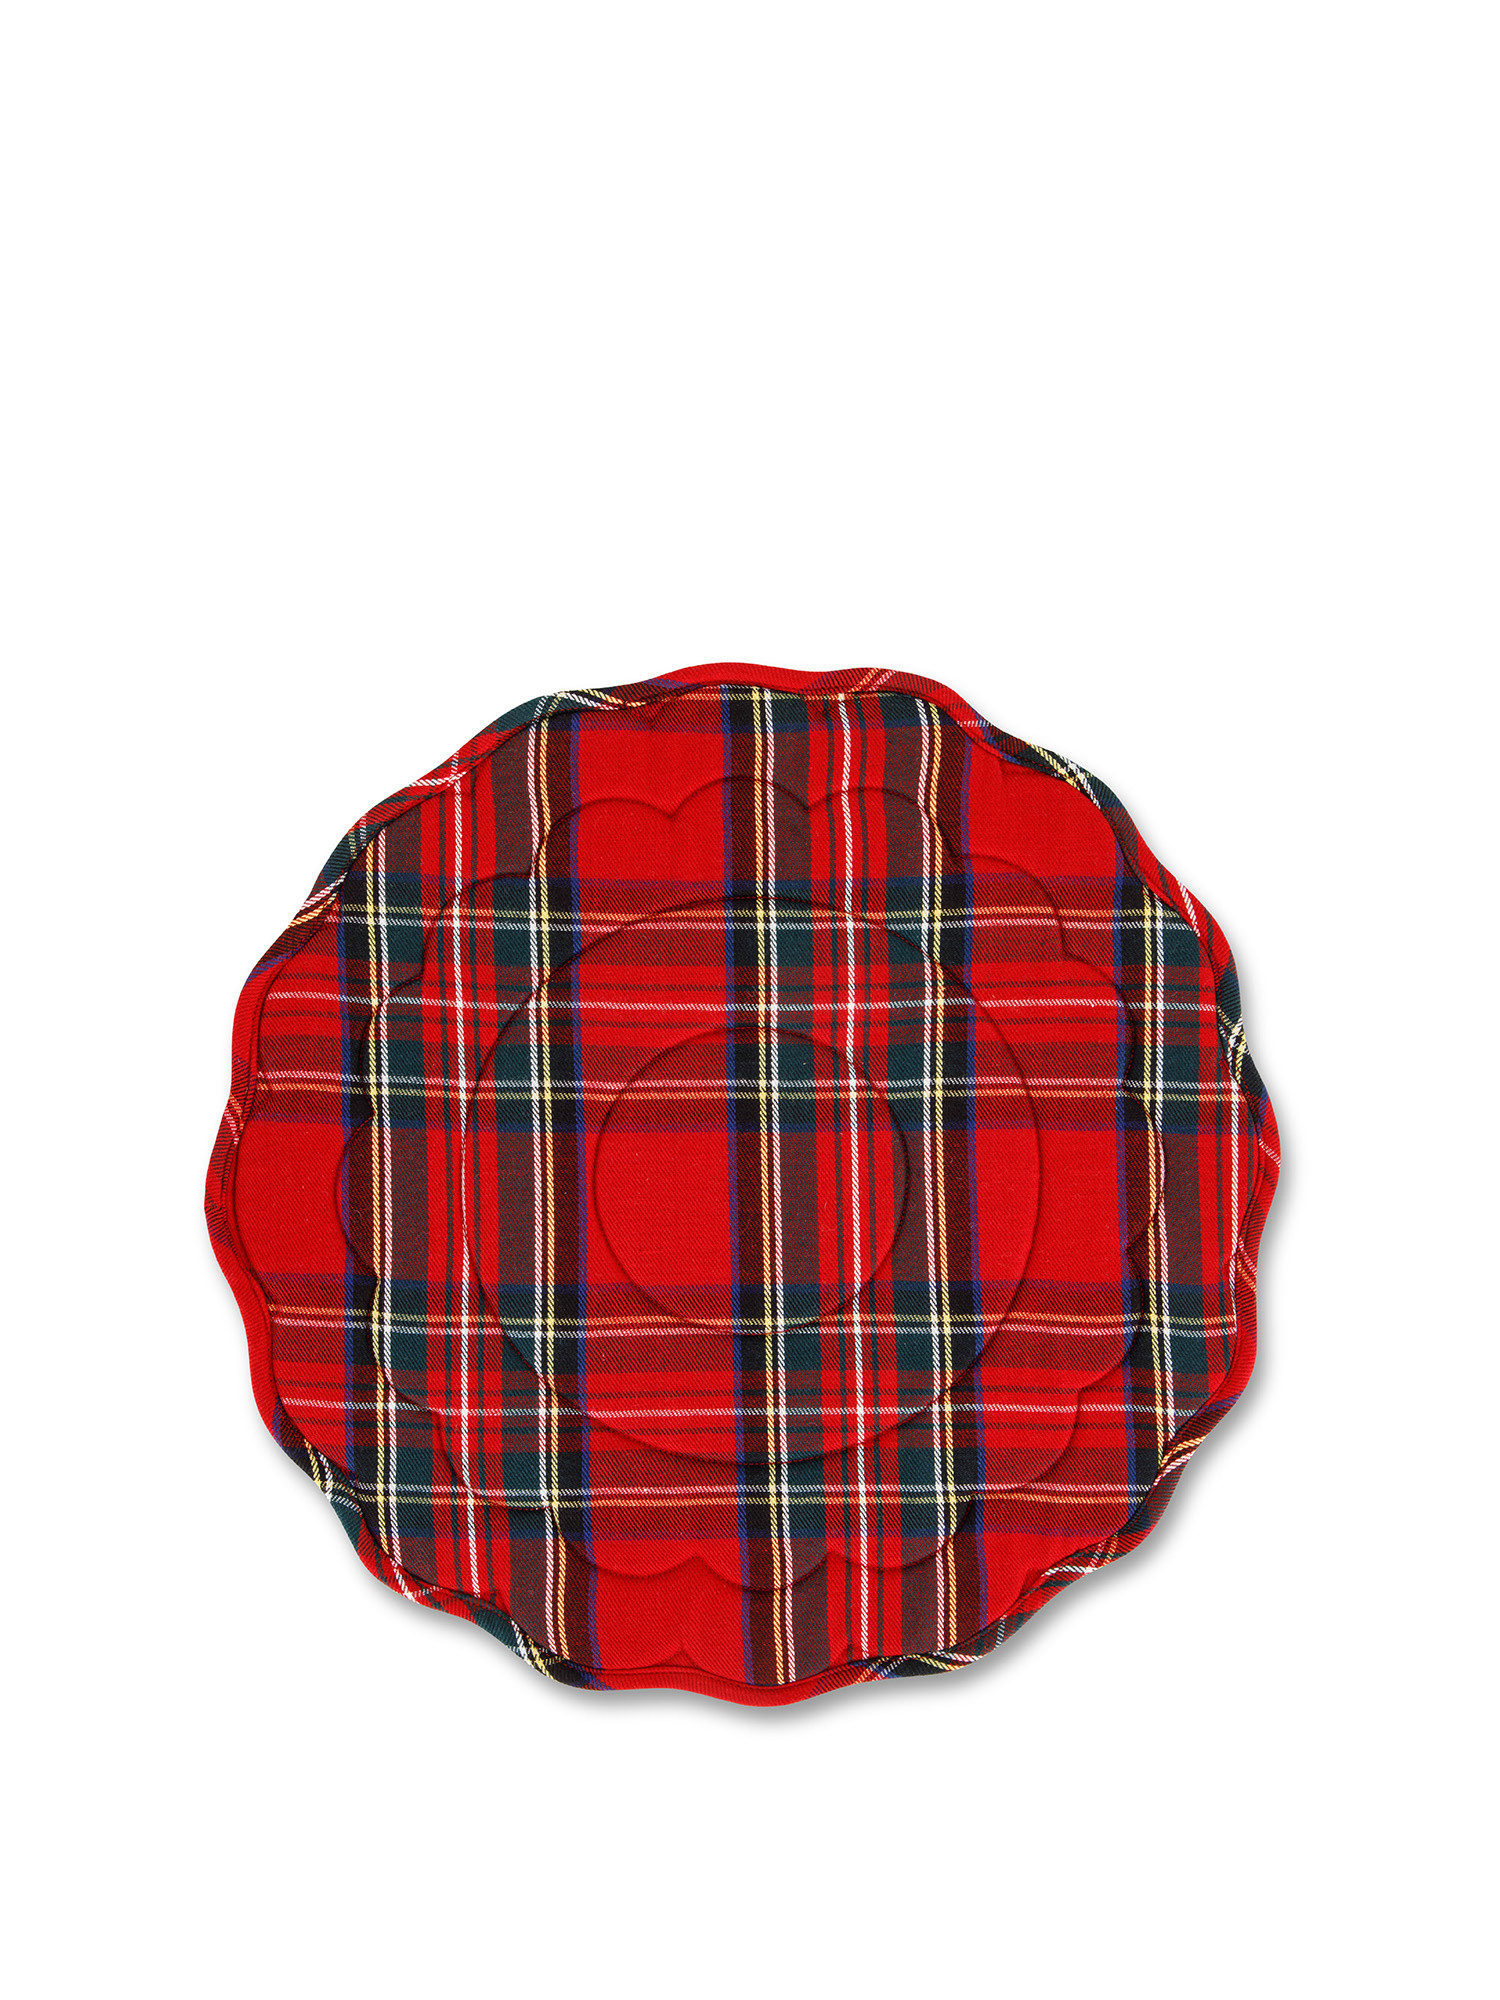 Tovaglietta twill di cotone tartan, Rosso, large image number 0